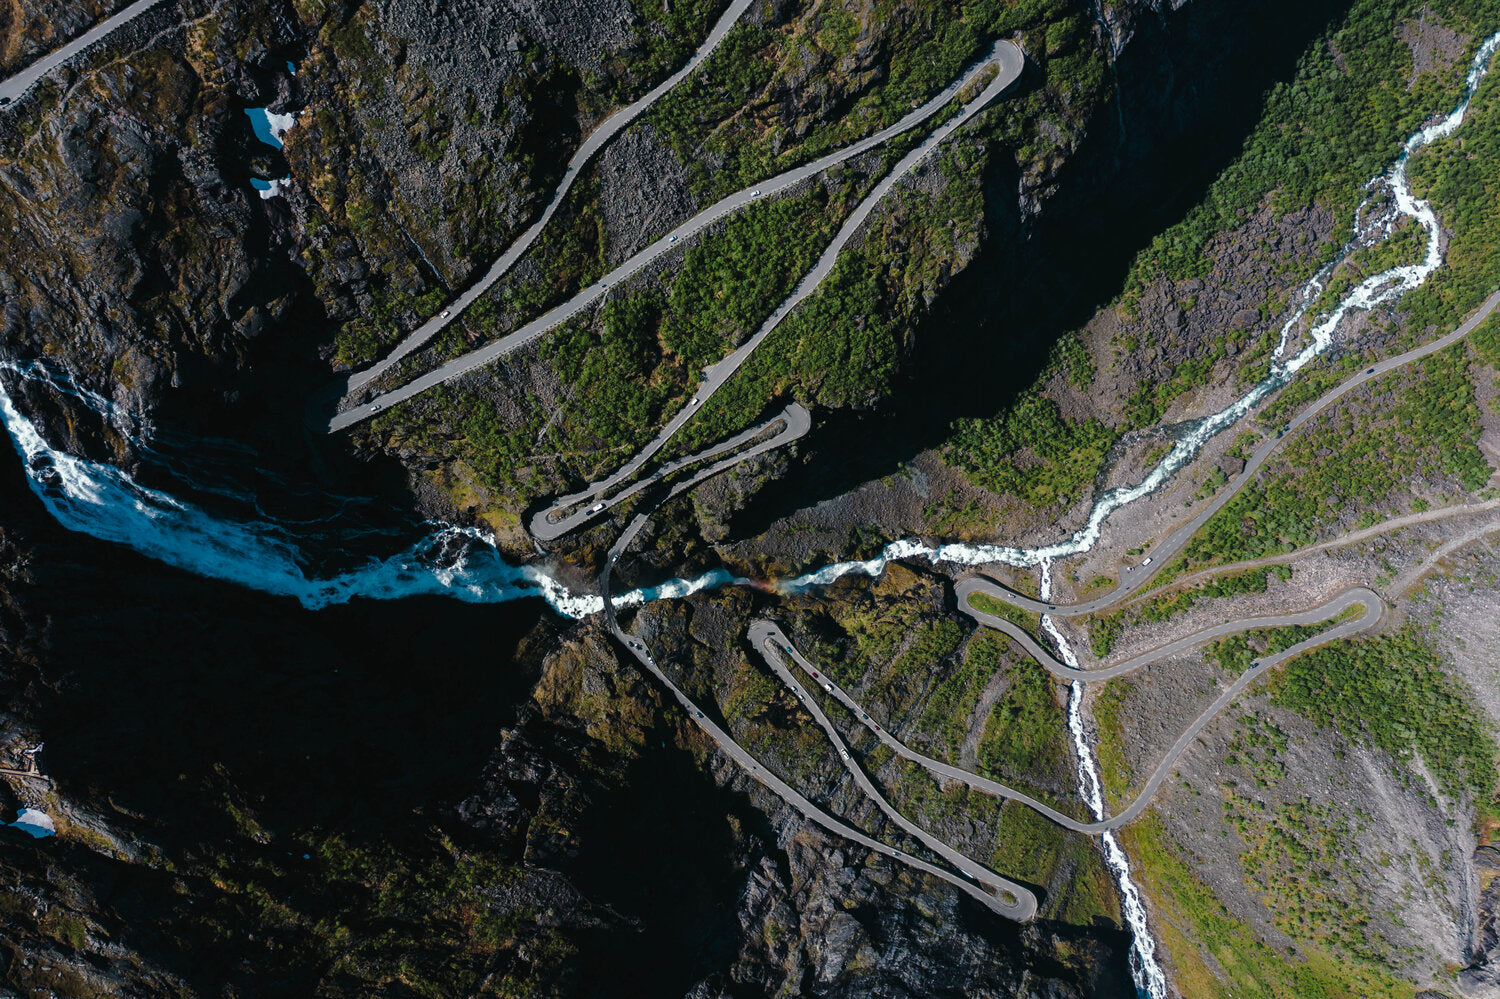 Trollstigen 11 hairpin bend, Norway